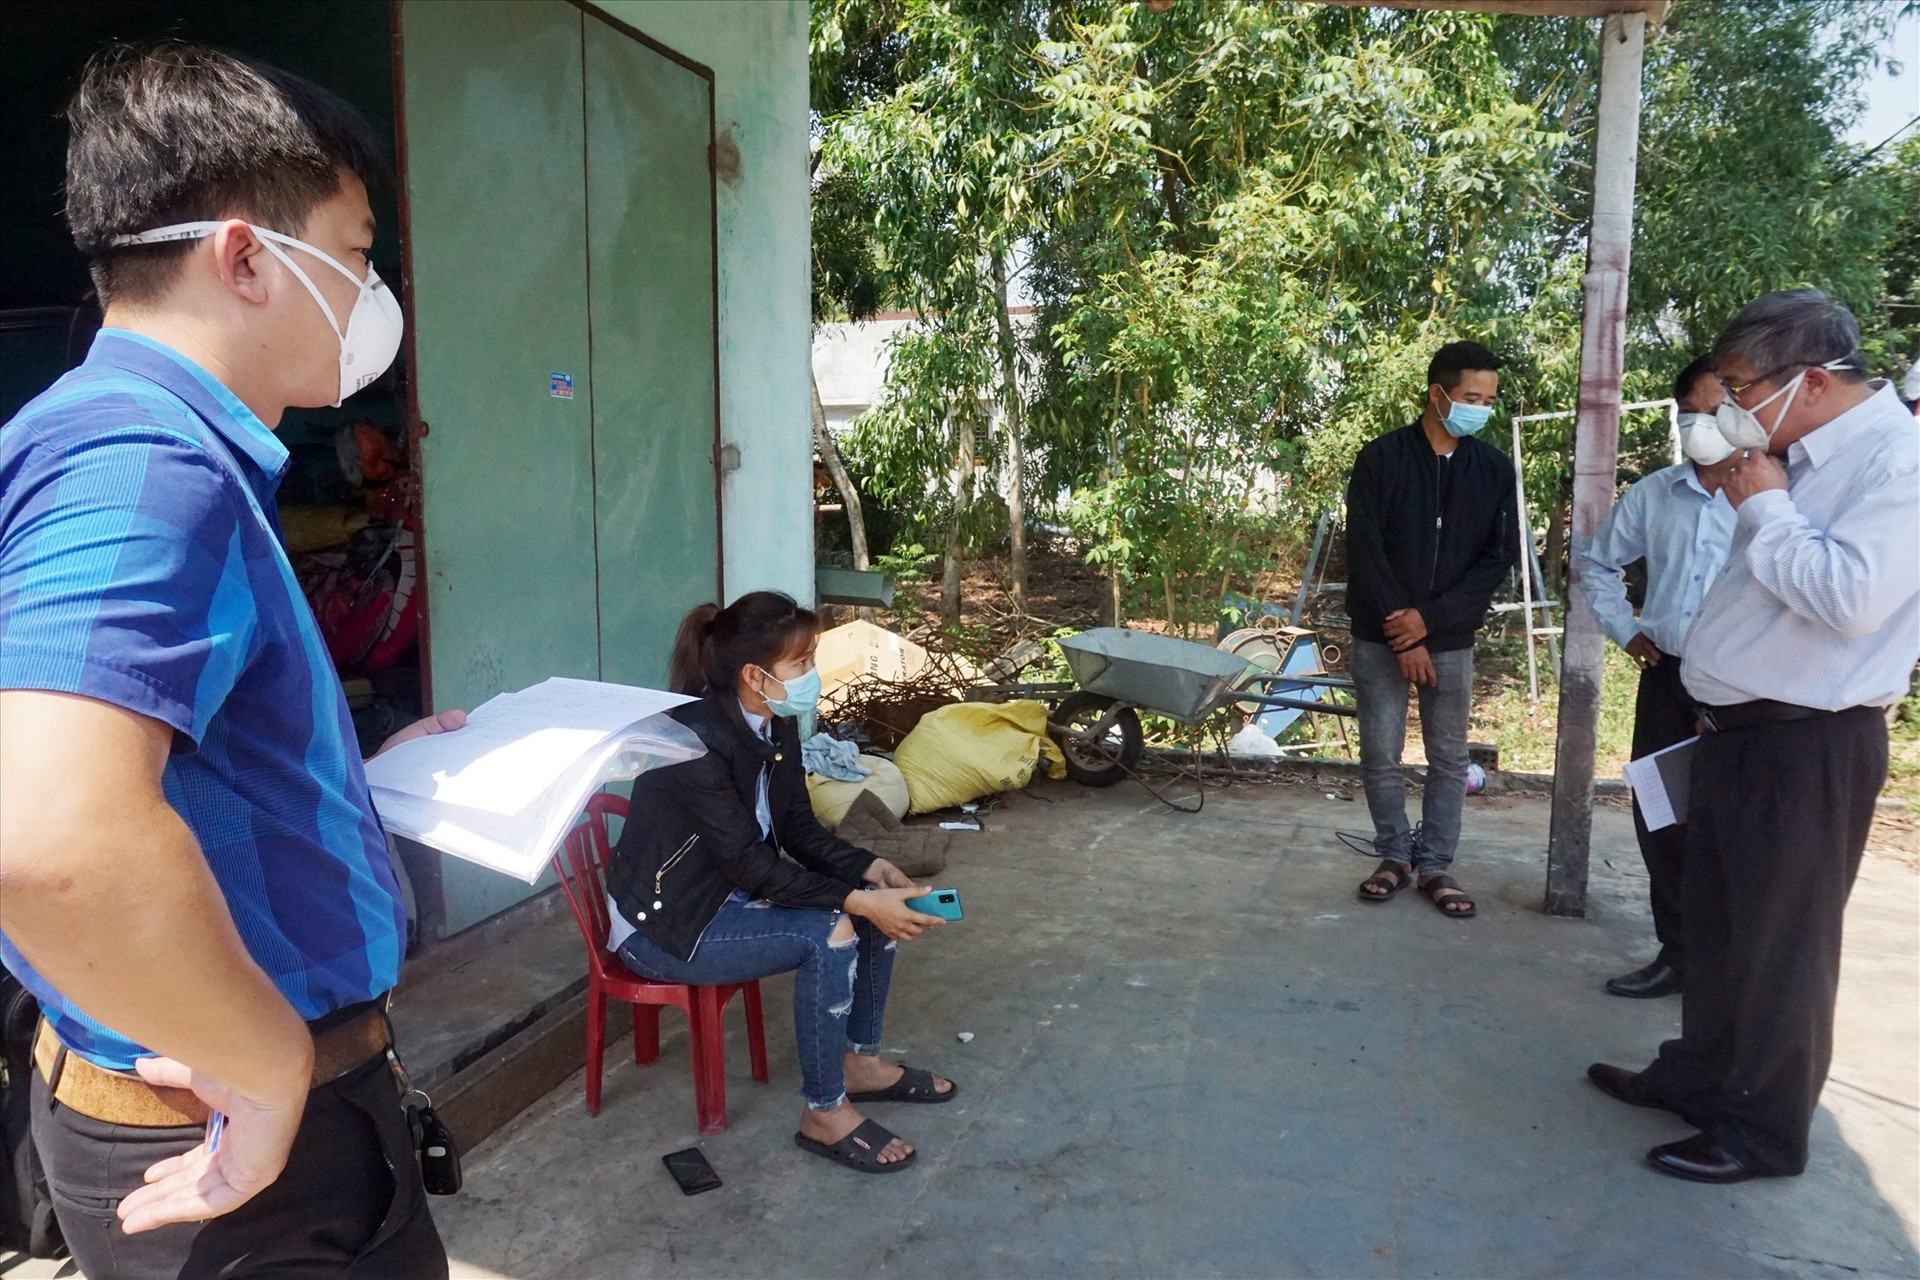 Đoàn công tác của huyện và Trung tâm Kiểm soát bệnh tật Quảng Nam đã đến kiểm tra tình hình sức khỏe của chị N.T.T.T (xã Bình Triều) - người có thời gian tiếp xúc gần với 2 du khách người Anh 5 giờ đồng hồ.